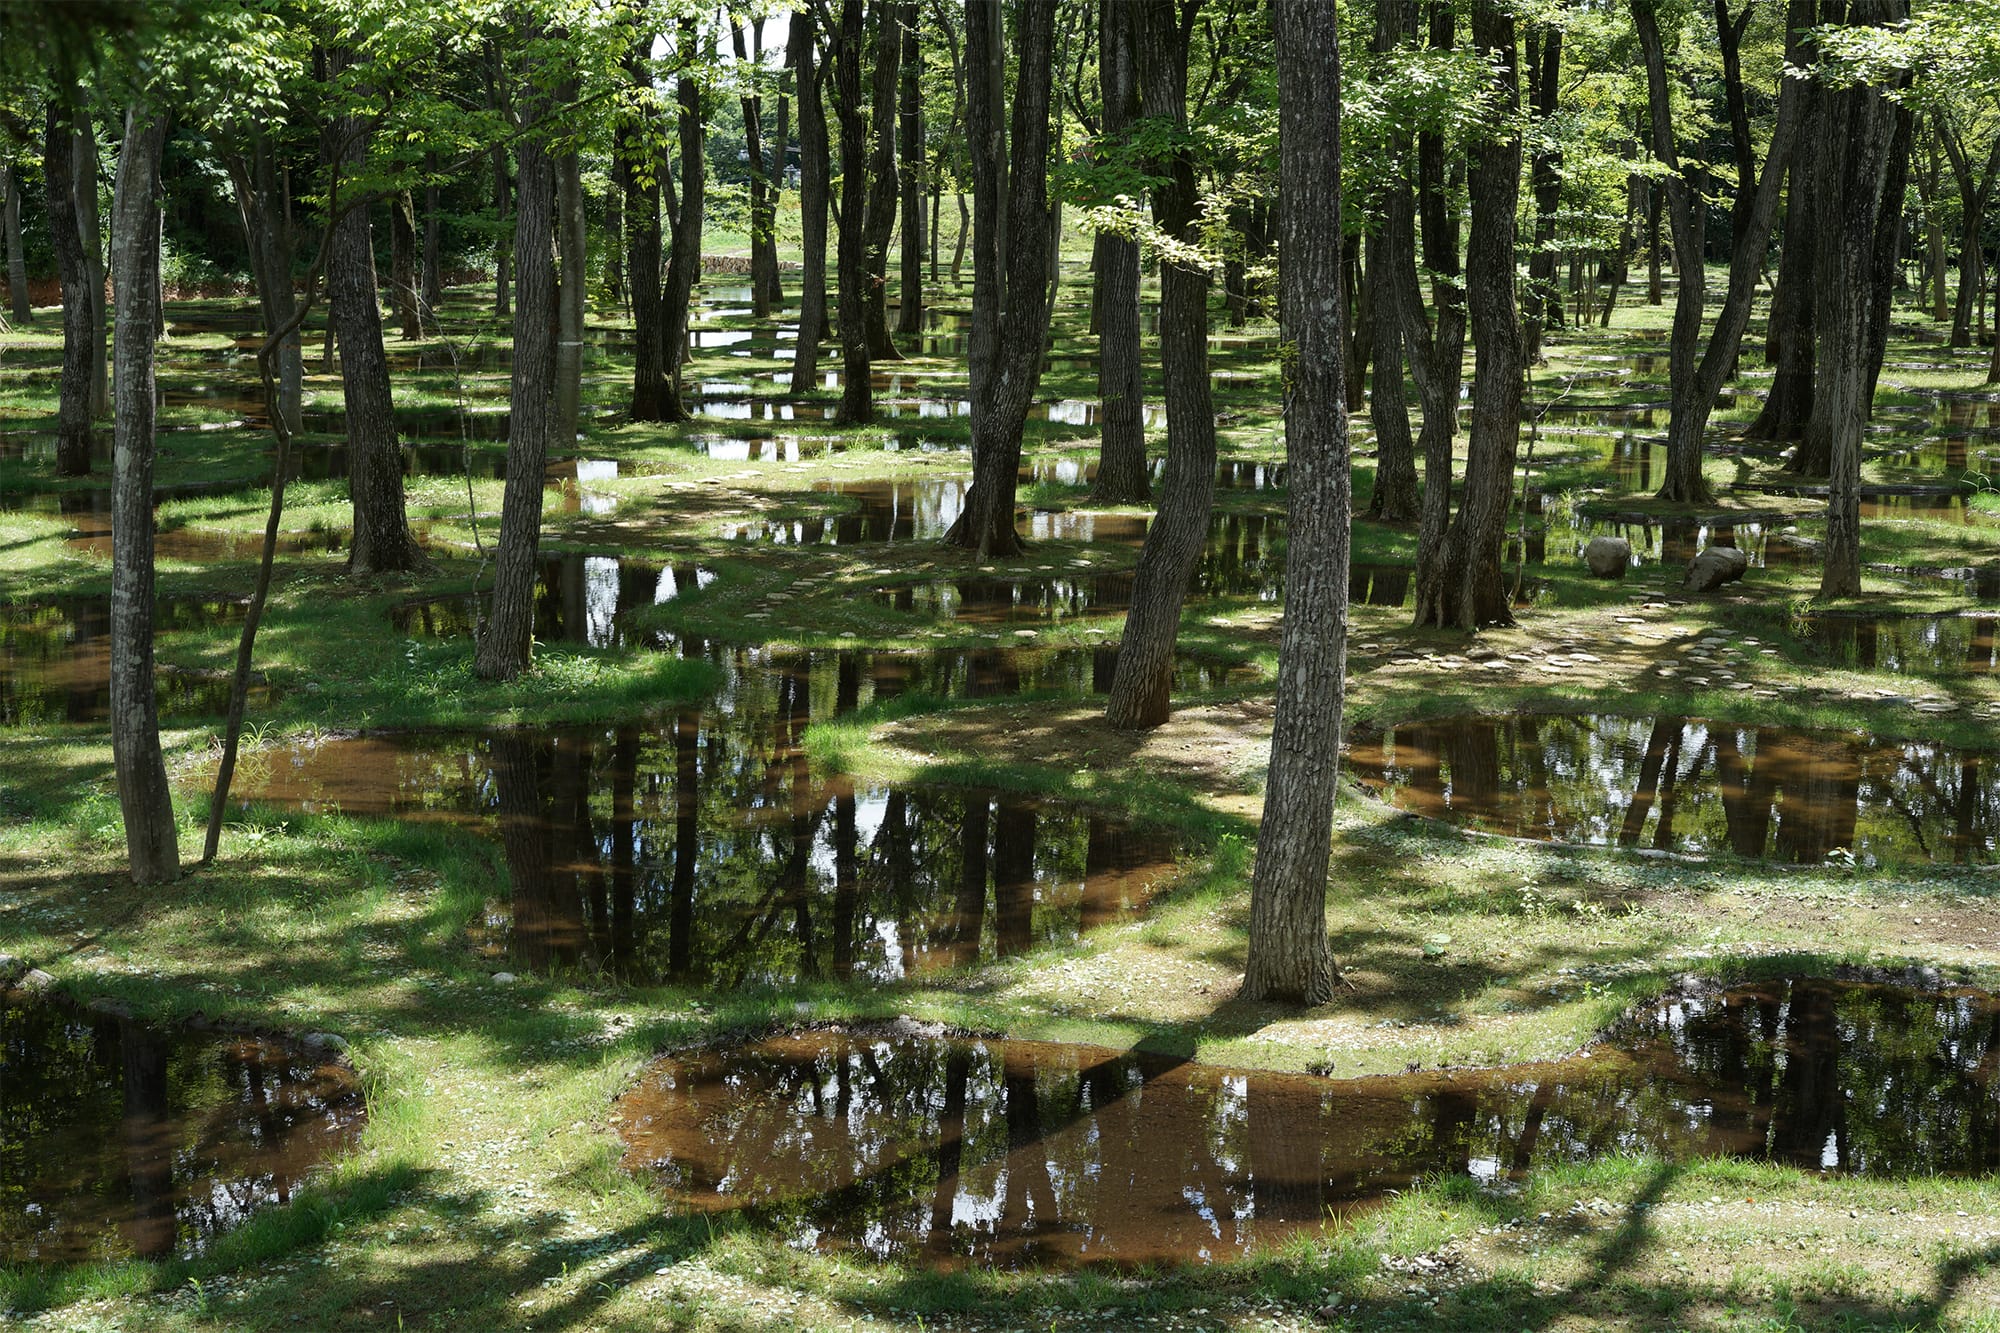 アートビオトープ那須にある「水庭」。木々のすき間から空が浮かび、水には木漏れ日が注ぐ。